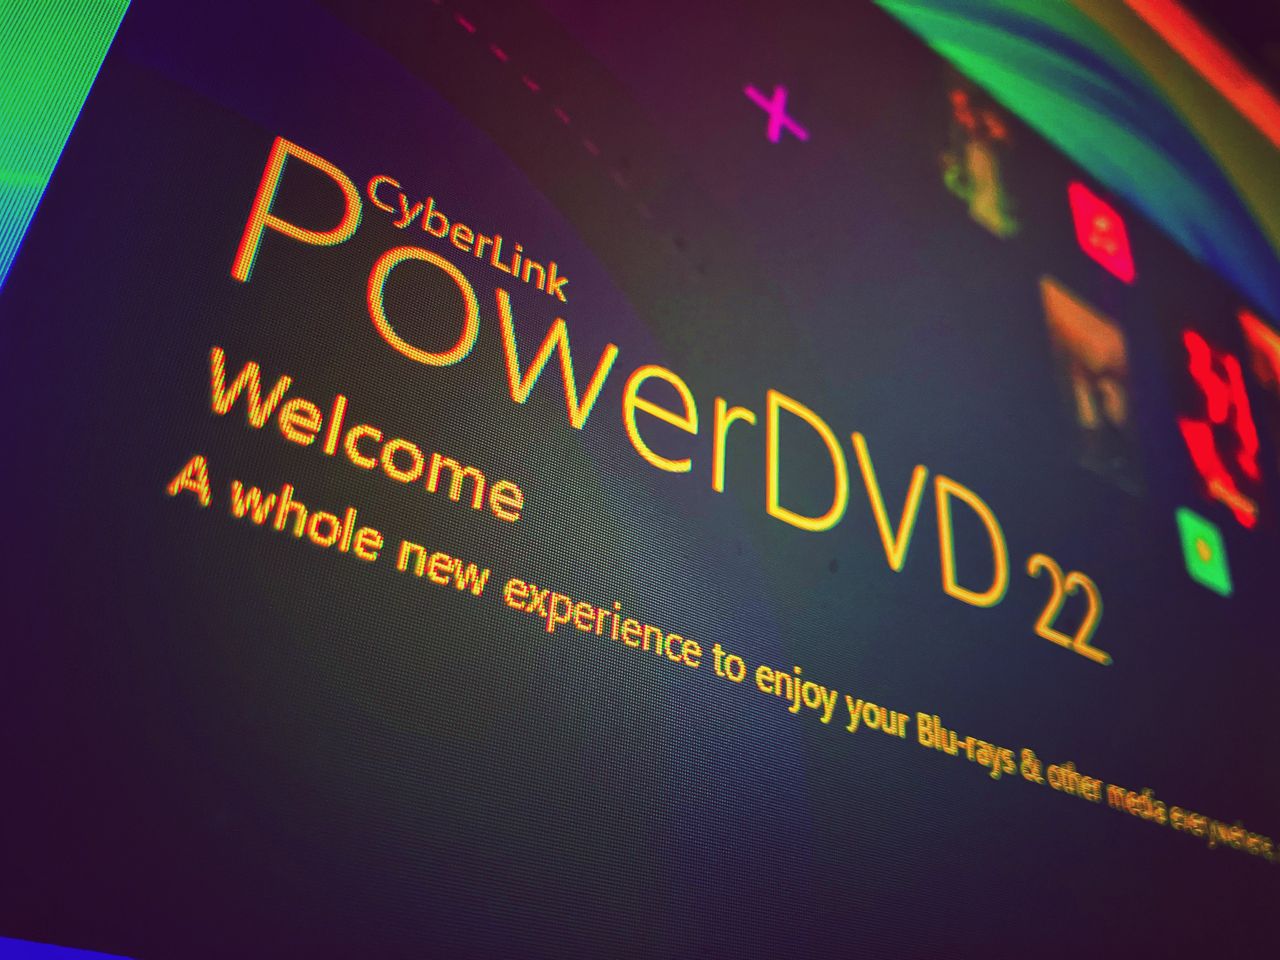 PowerDVD wciąż istnieje. Co oferuje? [OPINIA]